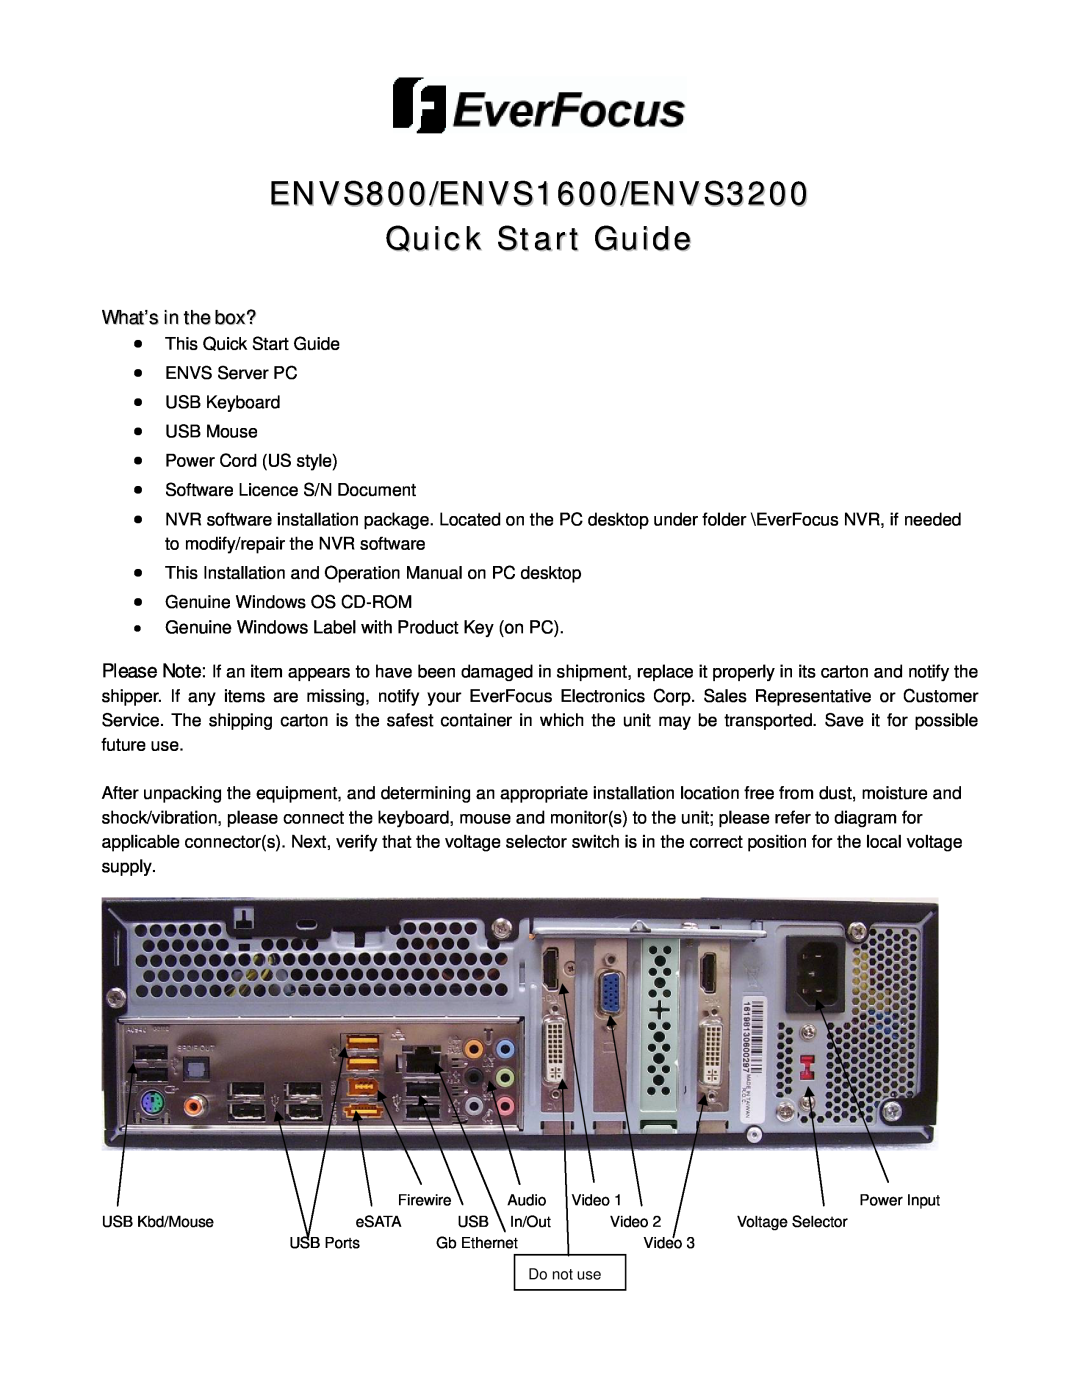 EverFocus quick start ENVS800/ENVS1600/ENVS3200 Quick Start Guide, What’s in the box? 